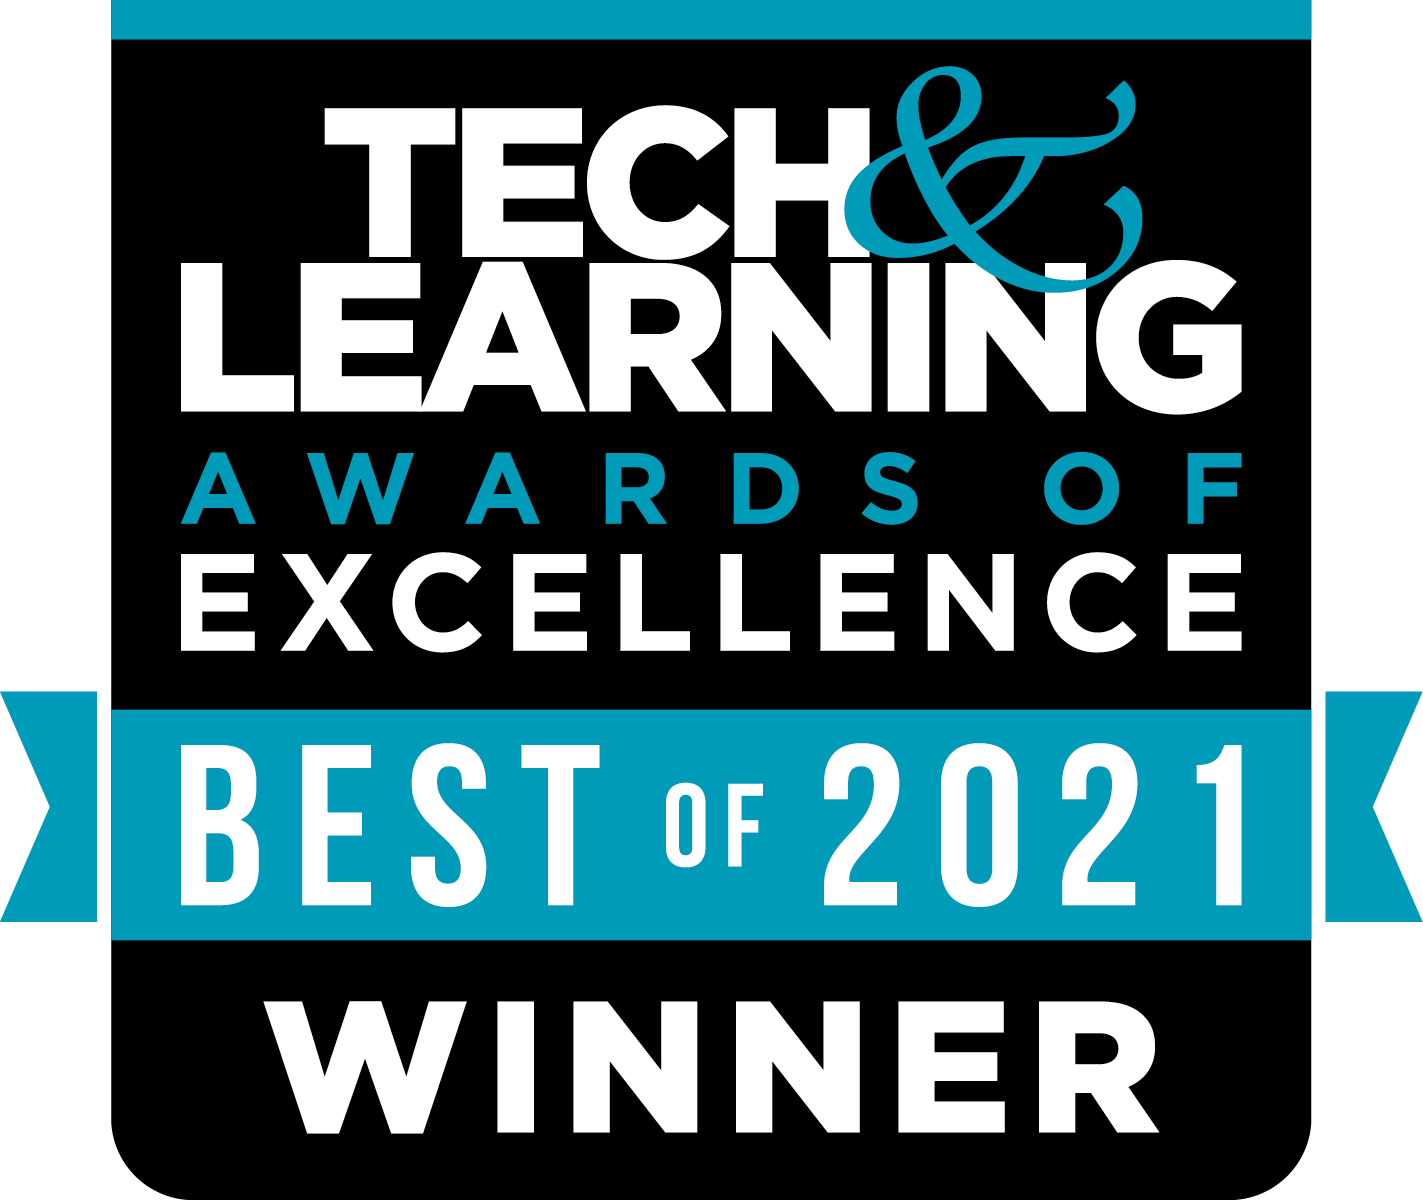 Tech & Learning Award Winner 